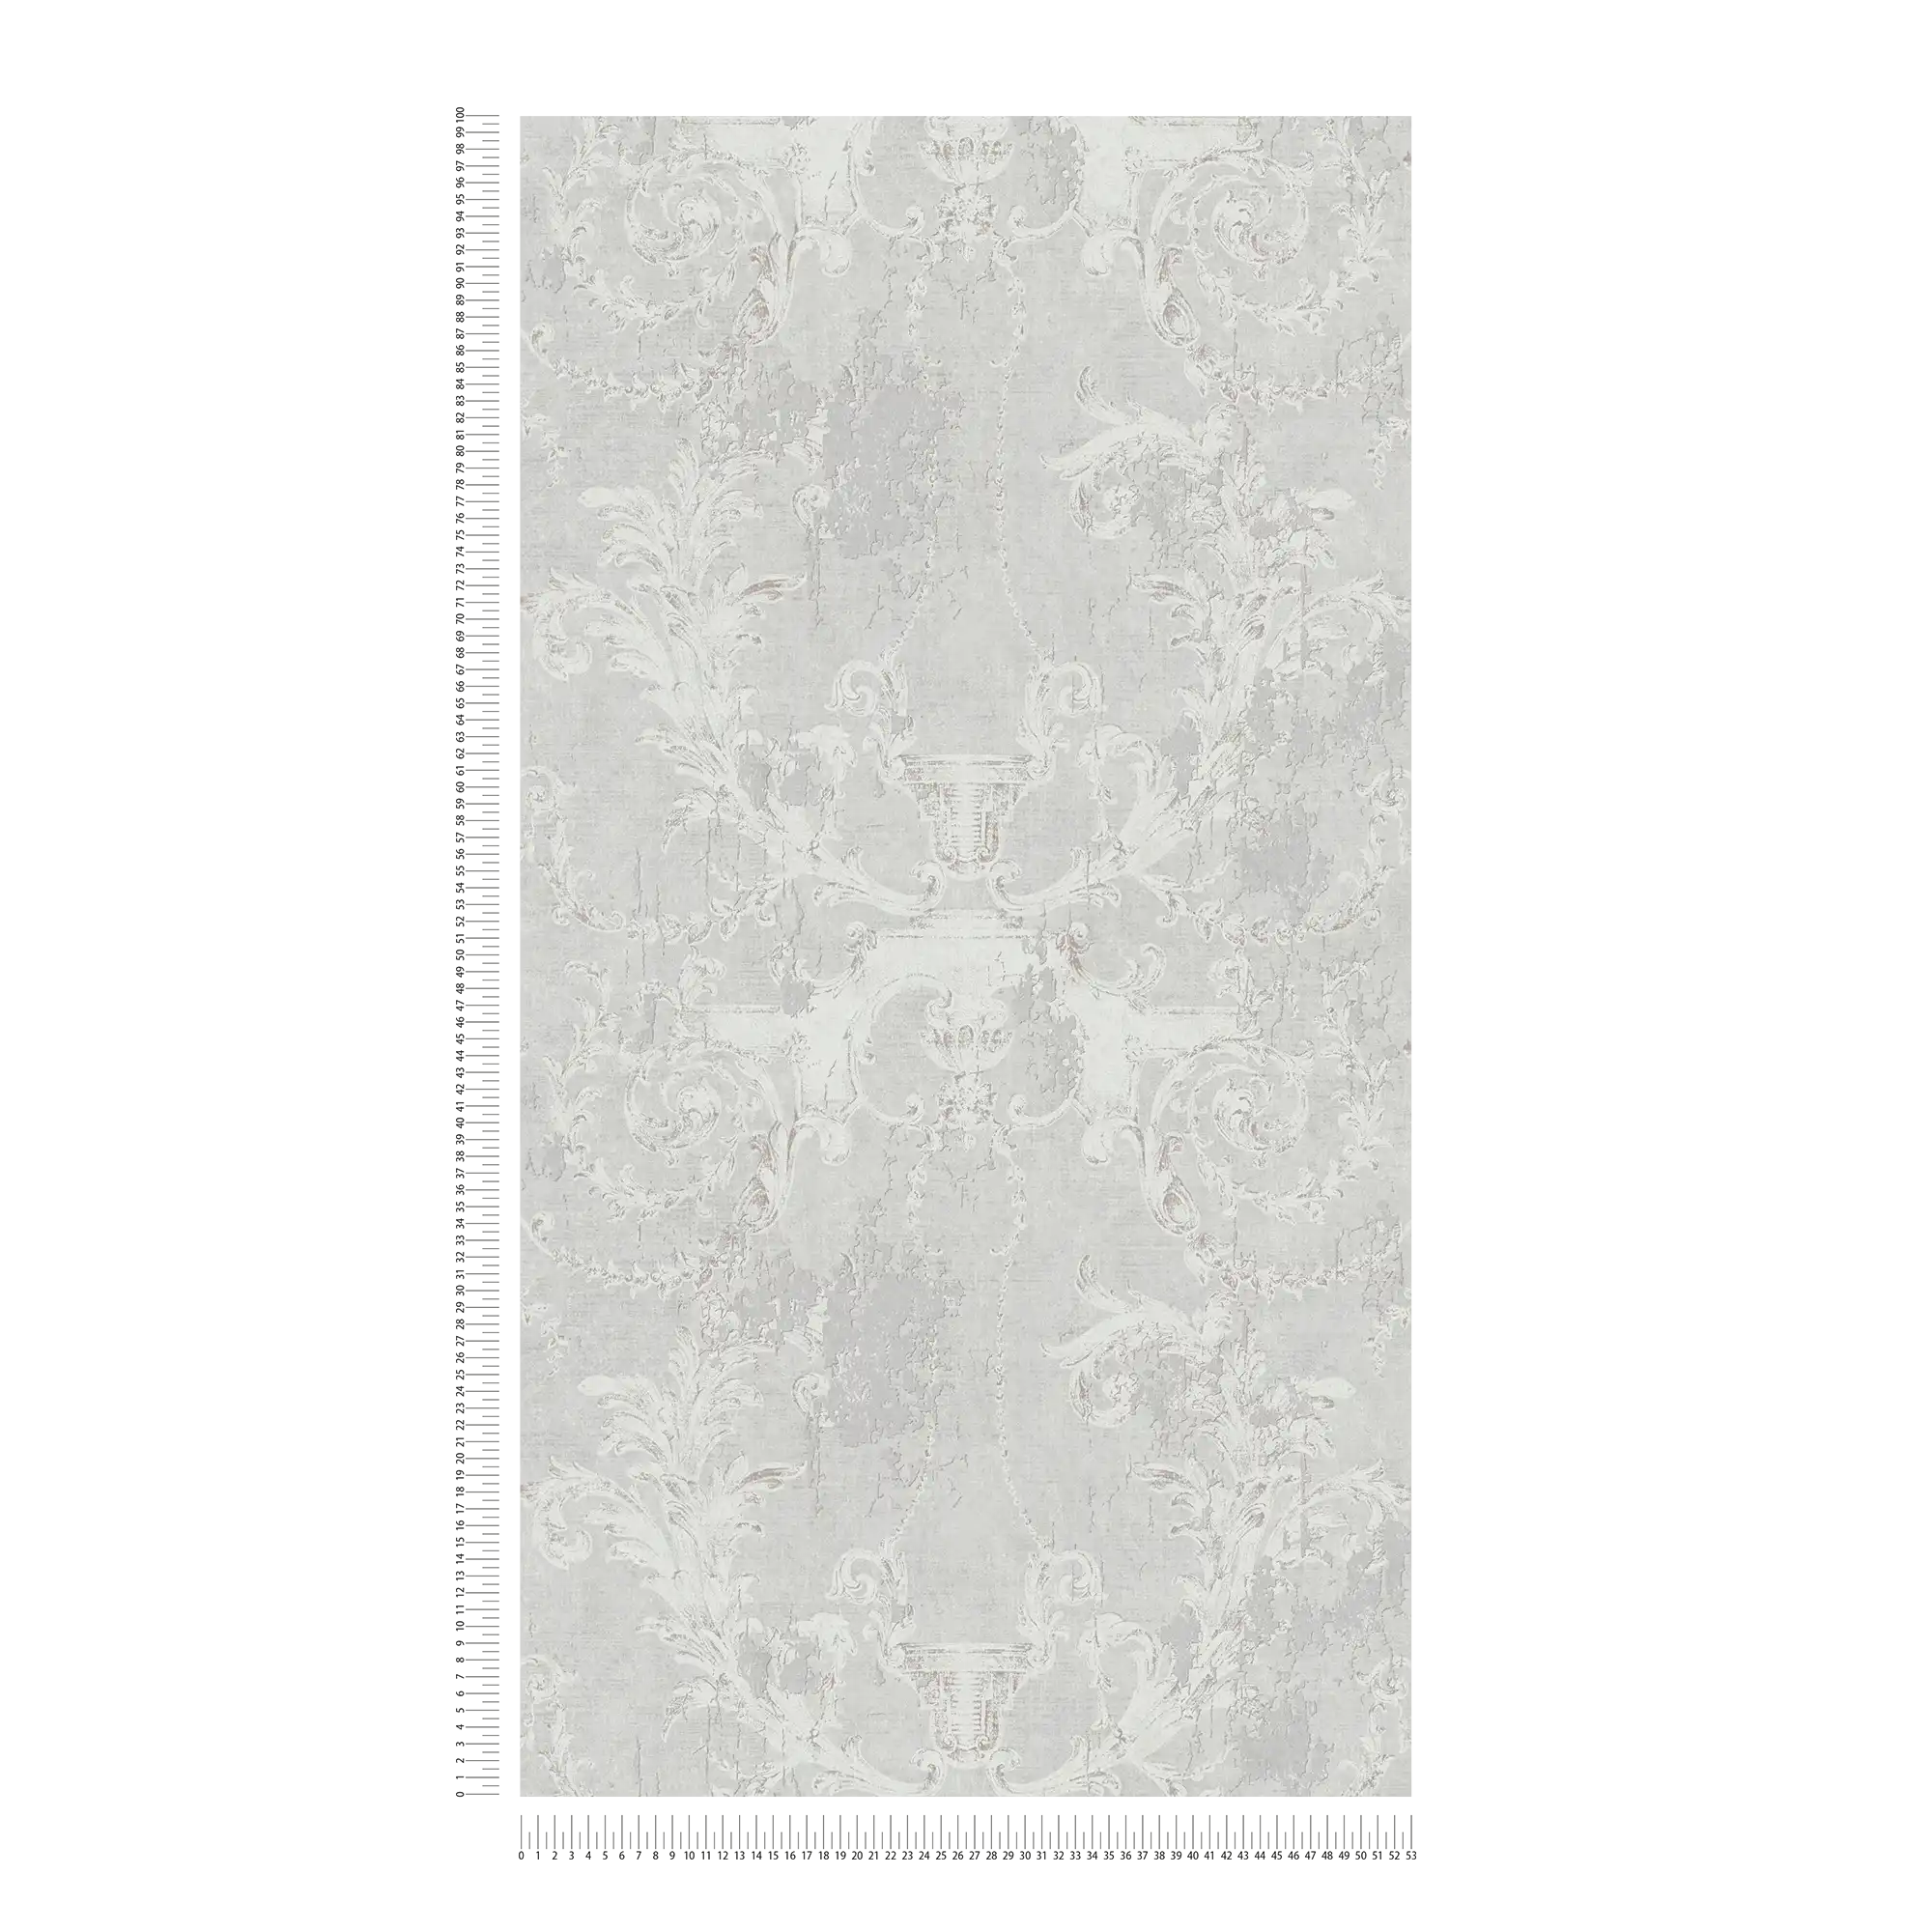             Carta da parati in tessuto non tessuto ornamenti storici e aspetto usato - grigio
        